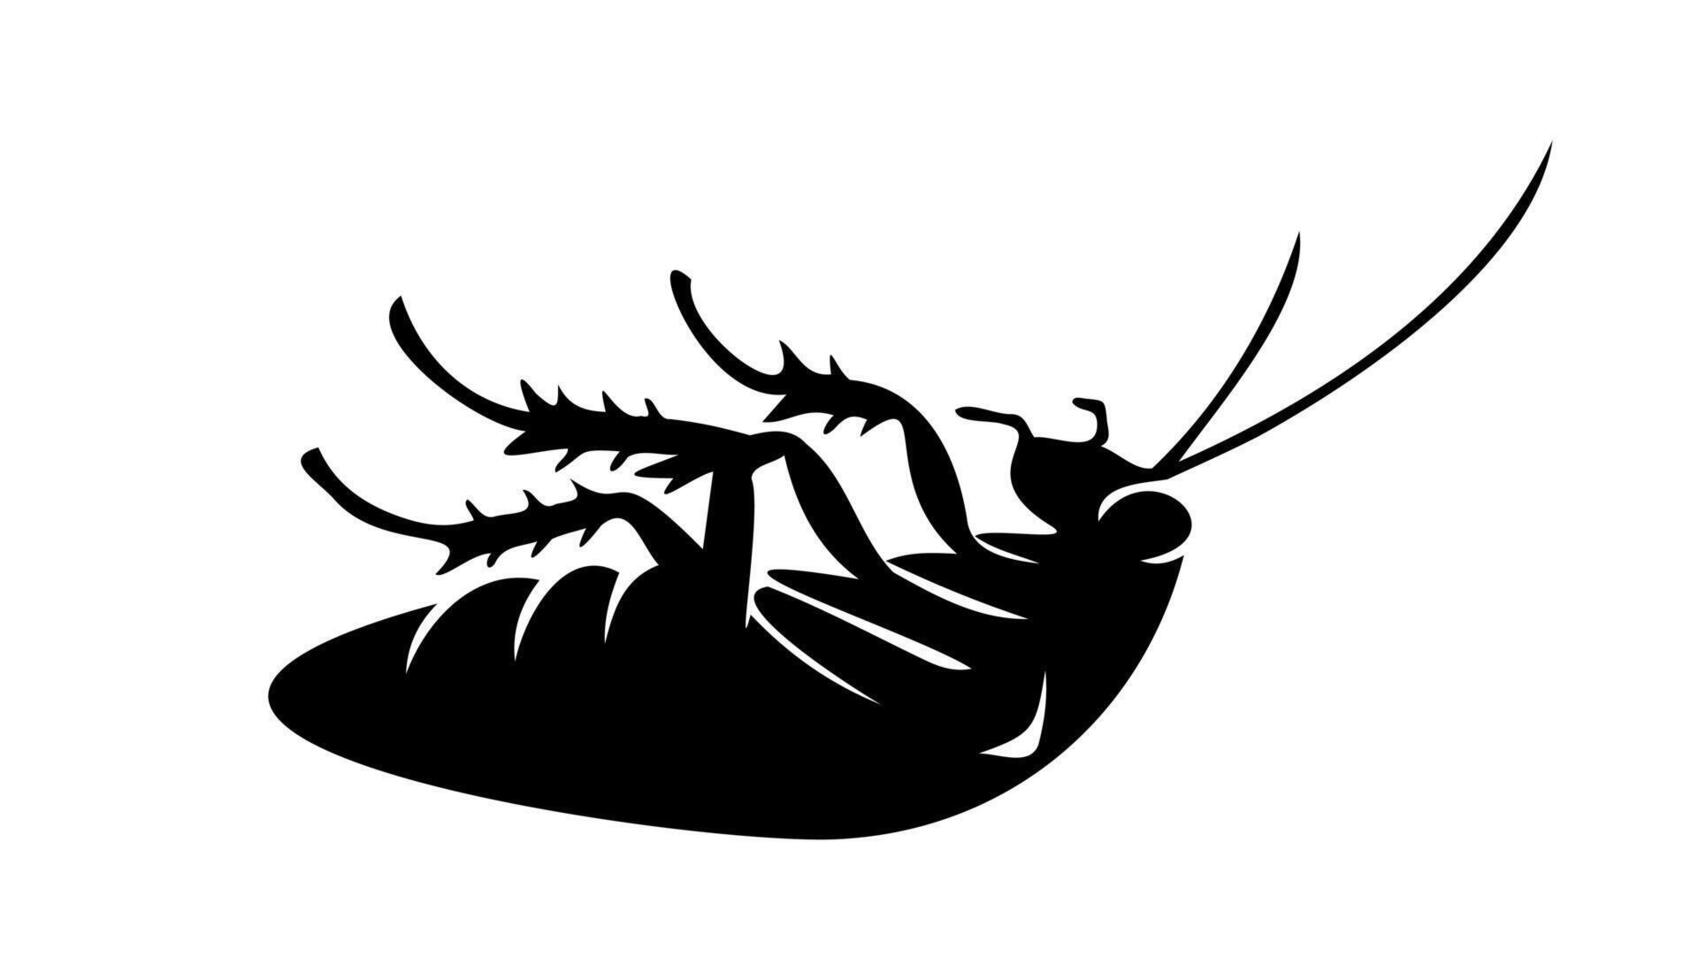 zwart silhouet van dood kakkerlak aan het liegen Aan haar terug Aan wit achtergrond. illustratie. mooi zo voor plaag controle onderhoud advertenties, hygiëne leerzaam inhoud, Product etiketten voor insecticiden. afdrukken vector